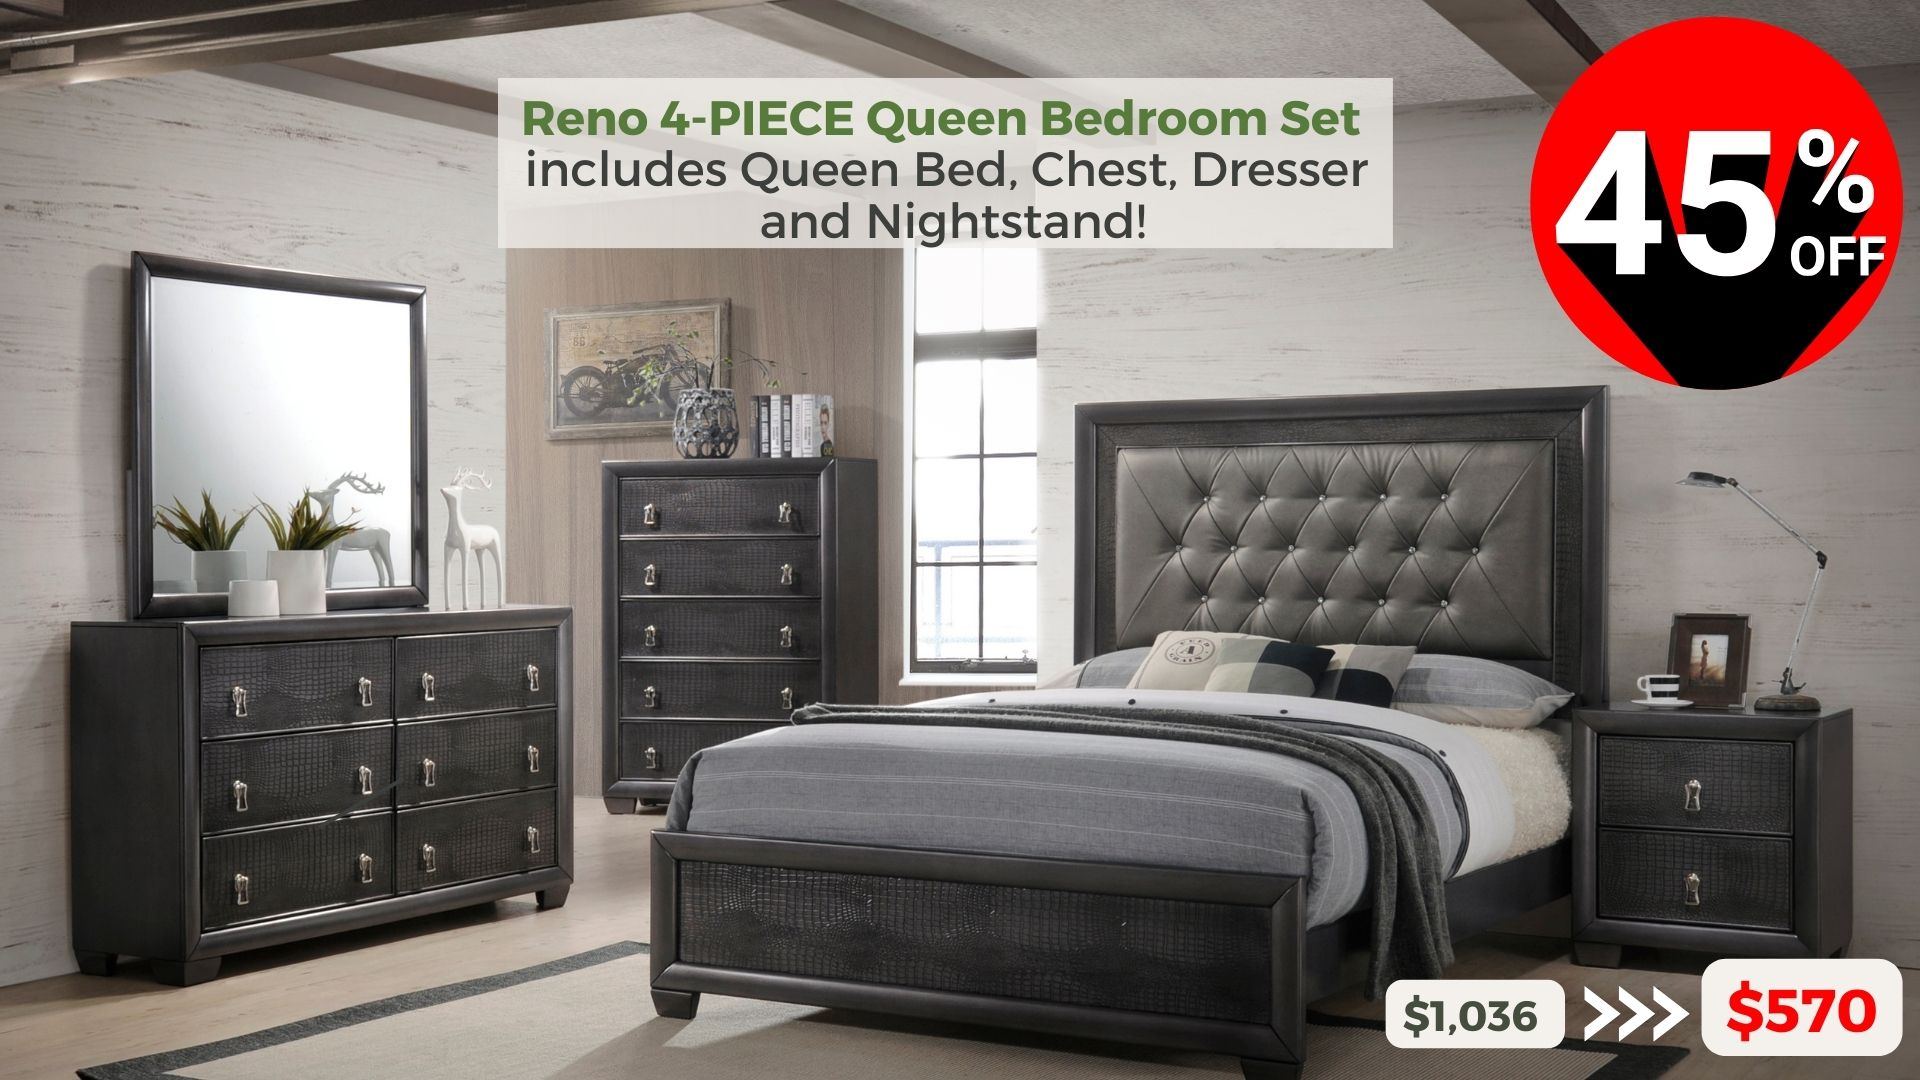 Reno 4-piece Queen Bedroom Set includes Queen Bed, Chest, Dresser and Nightstand. 45% off buy now $570